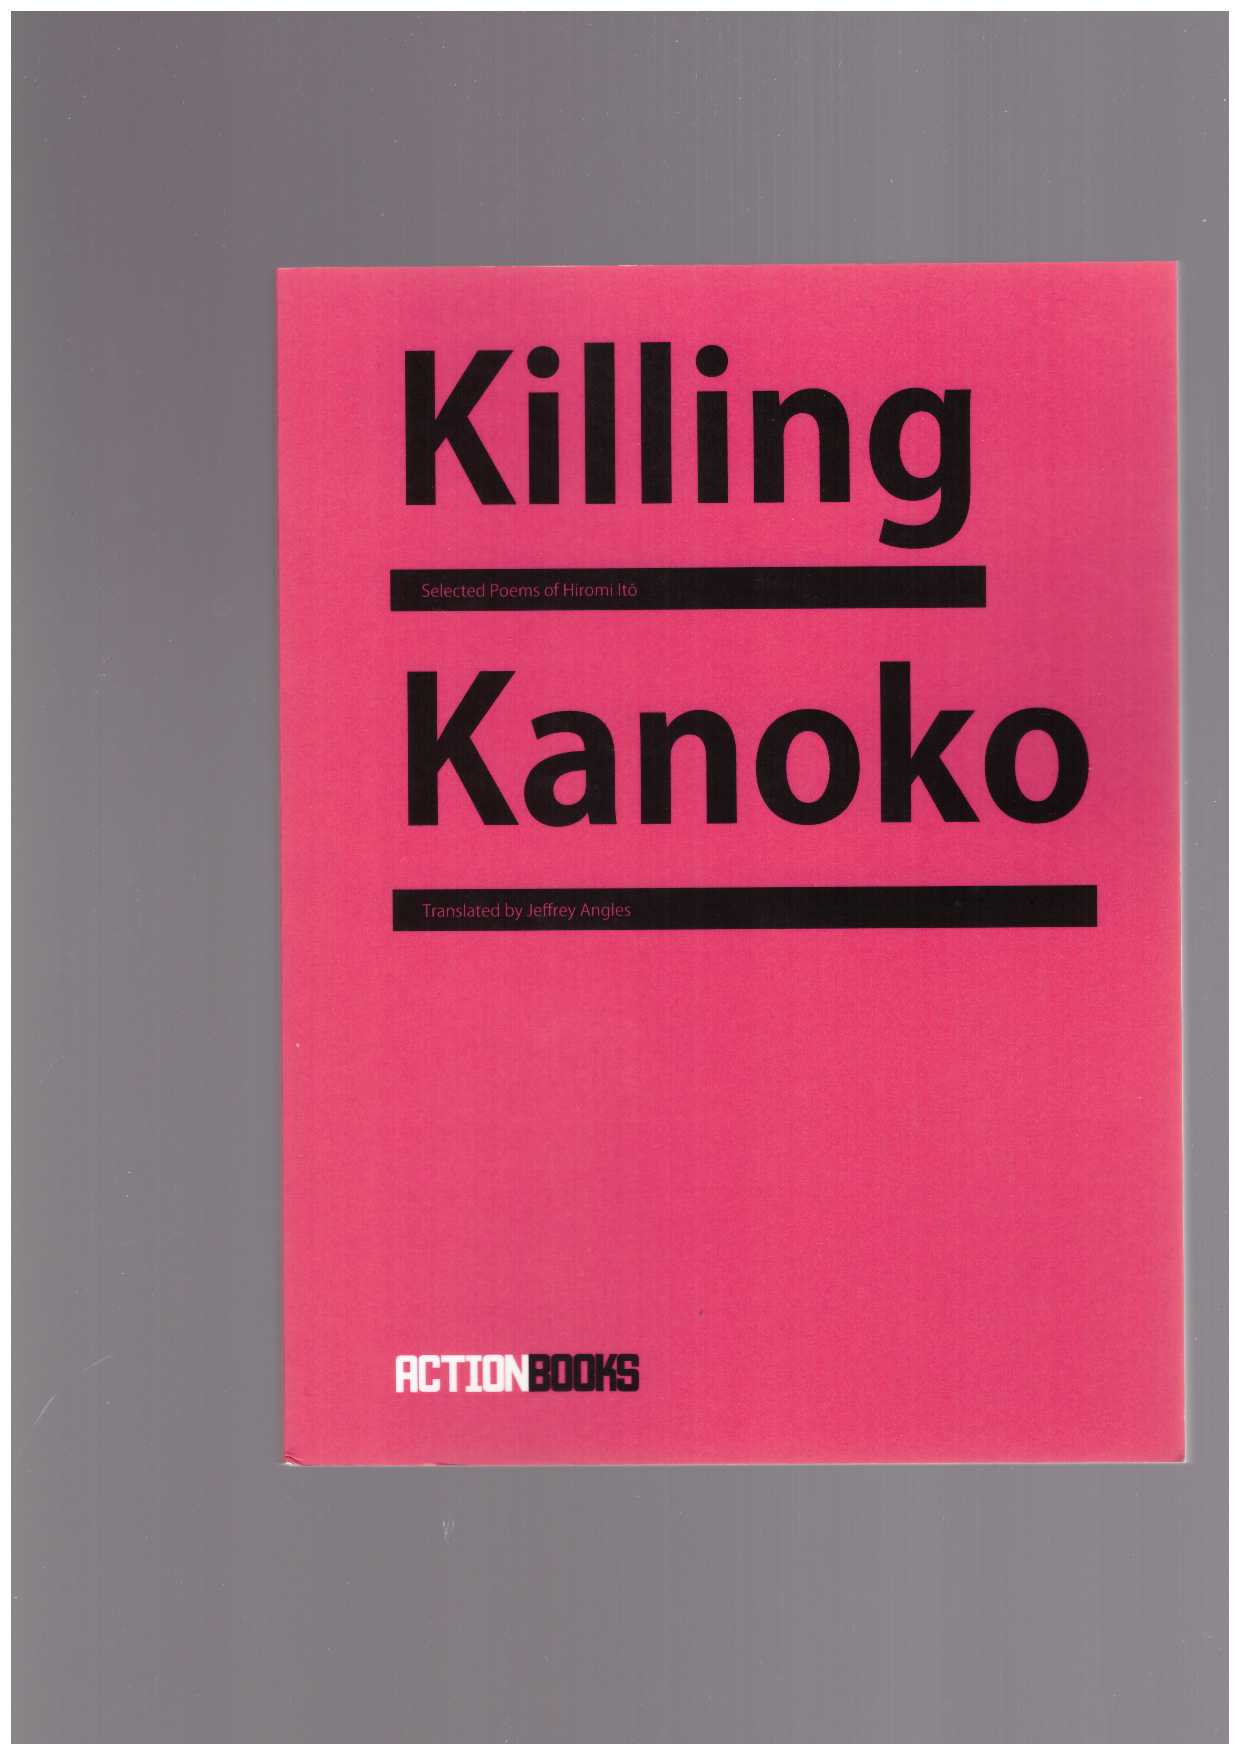 ITO, Hiromi - Killing Kanoko: Selected Poems